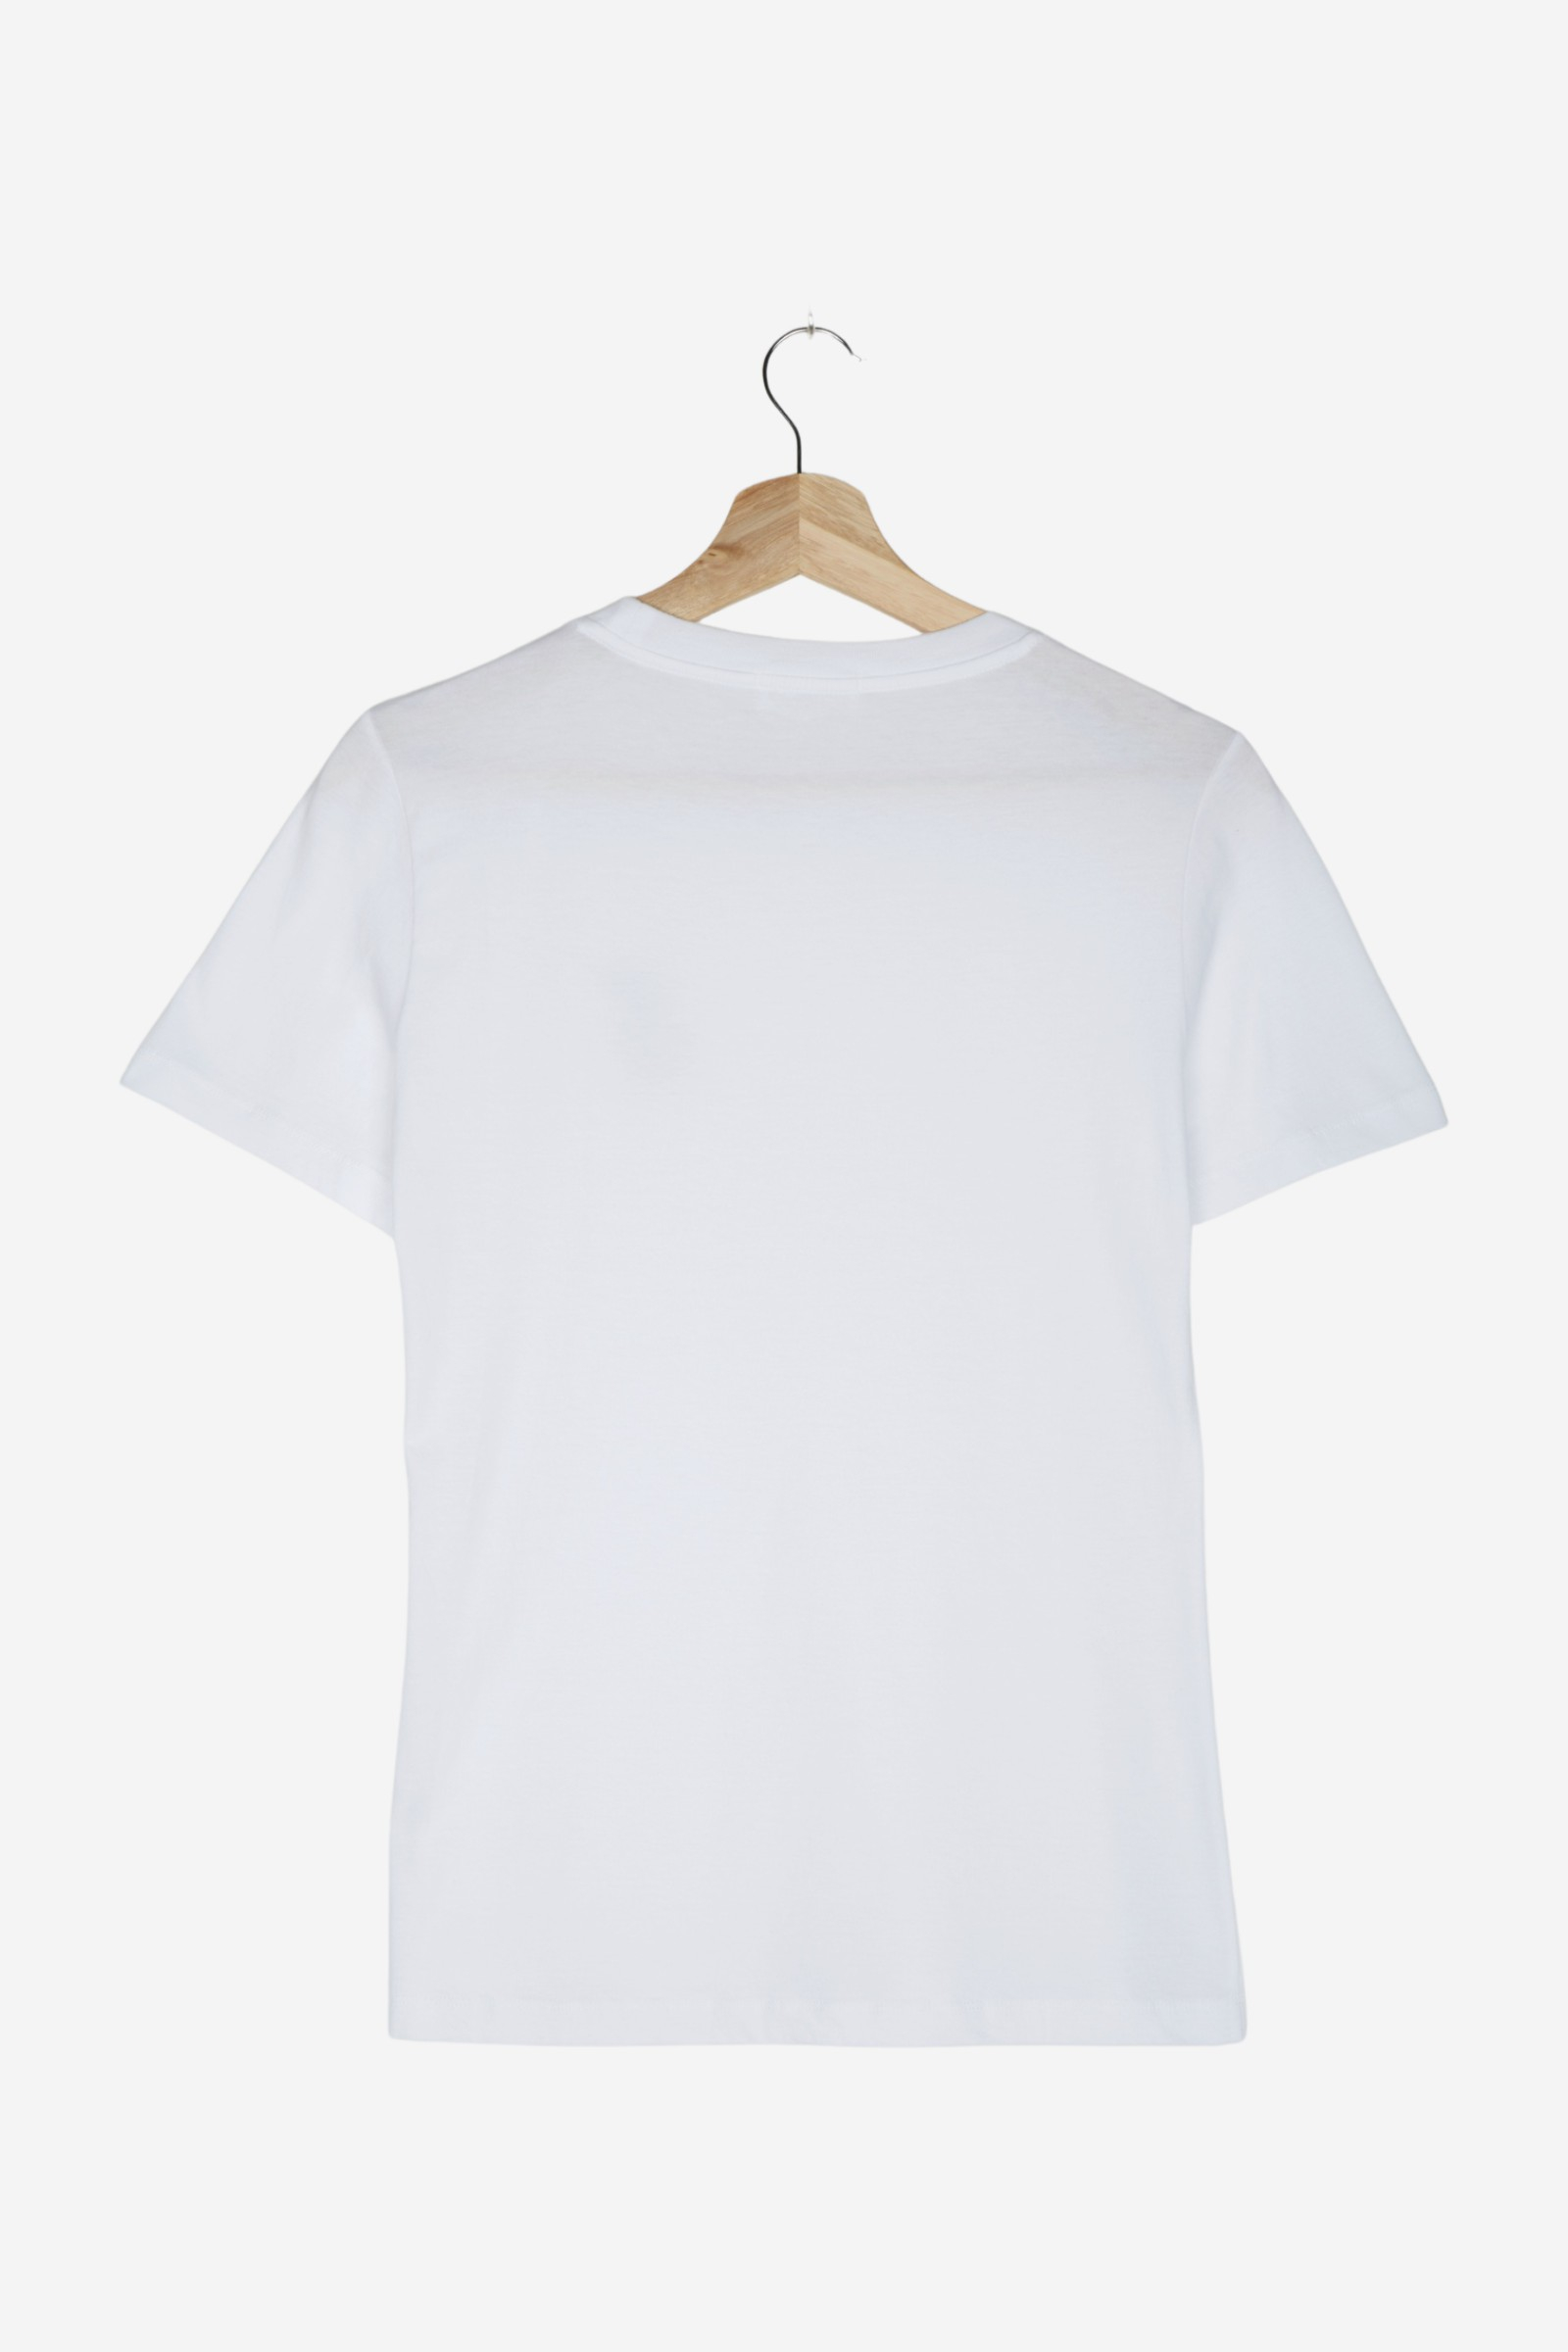 Shirts / T-Shirt w/ Print